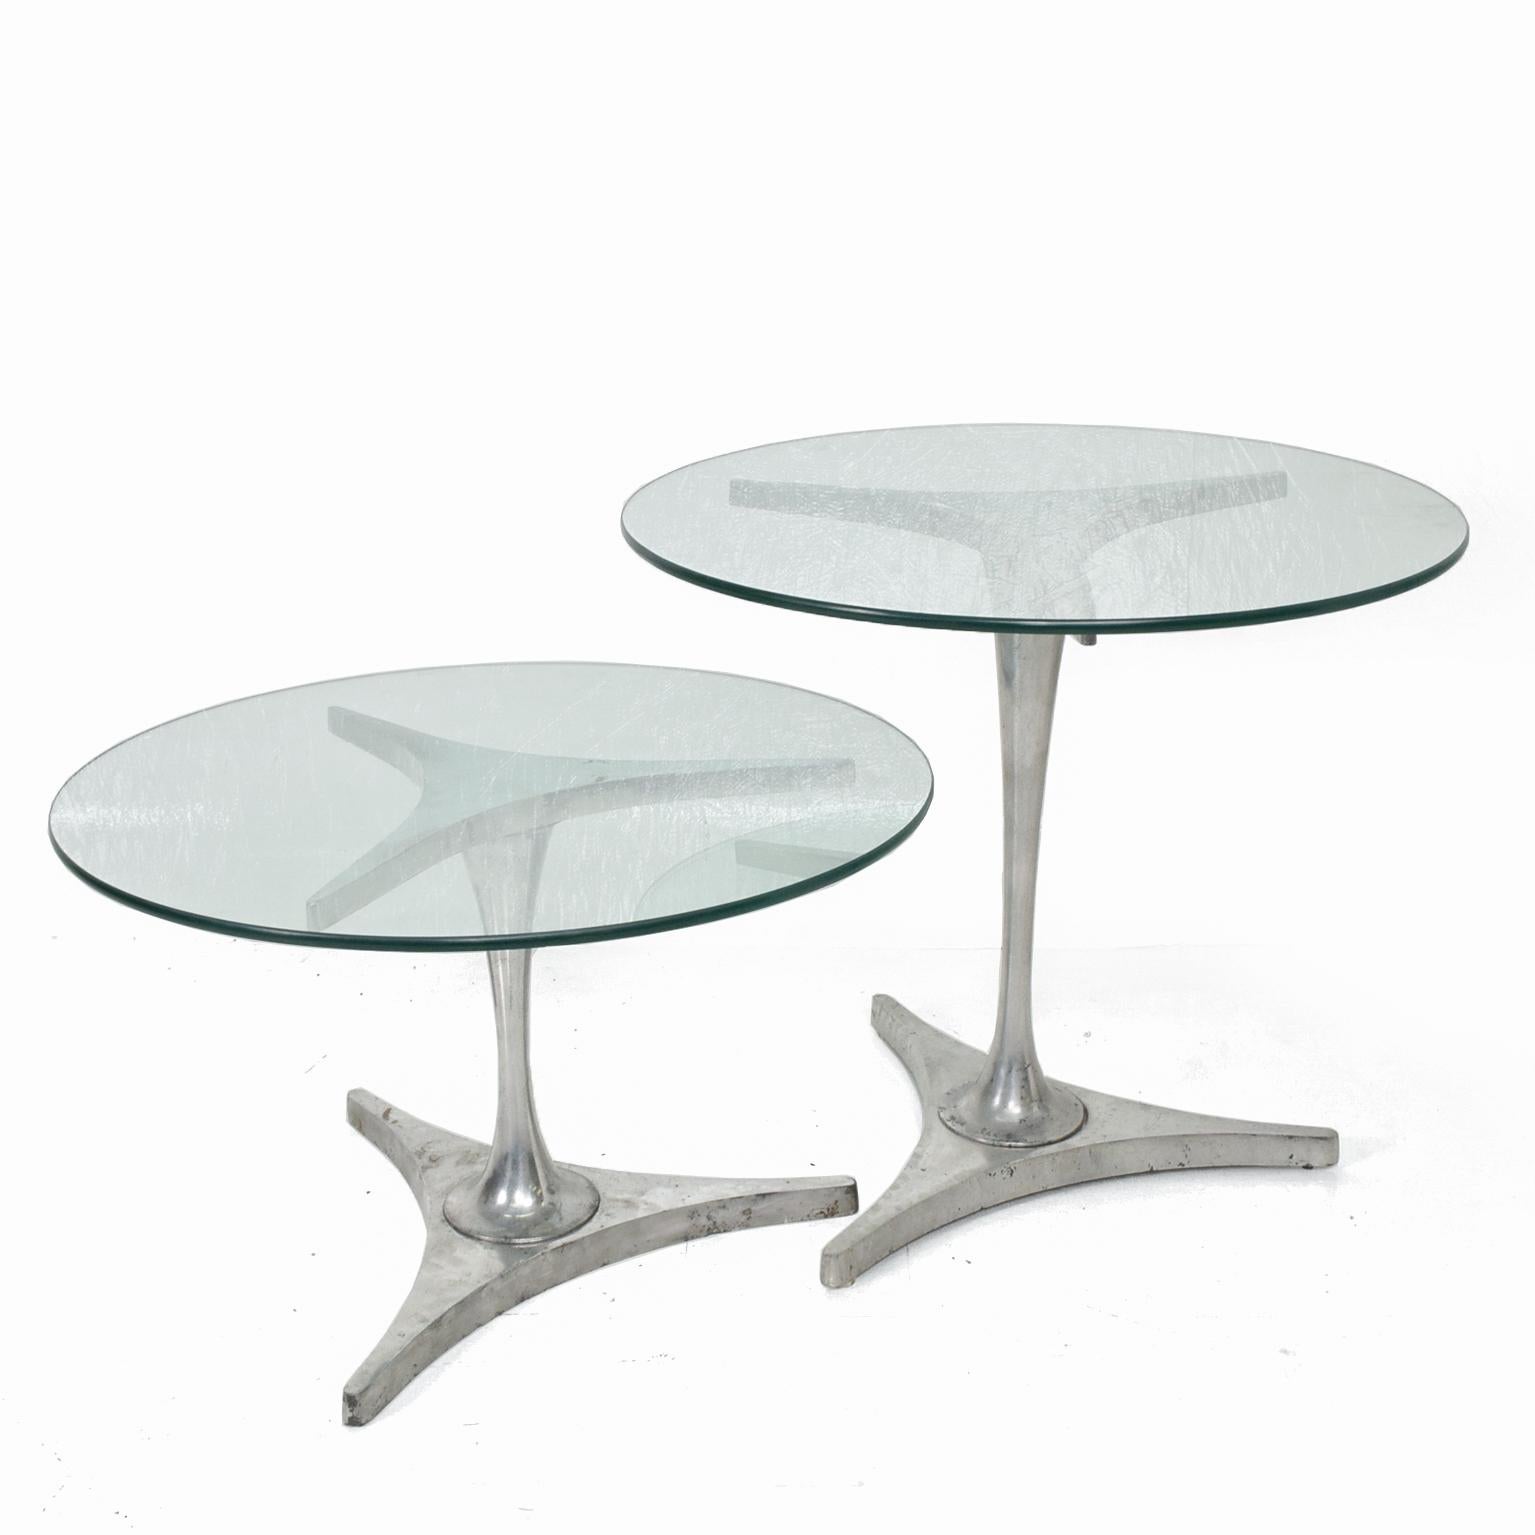 1960s Side Nesting Round Glass Tables in Aluminum Mod Star Trek Triangular Base 2